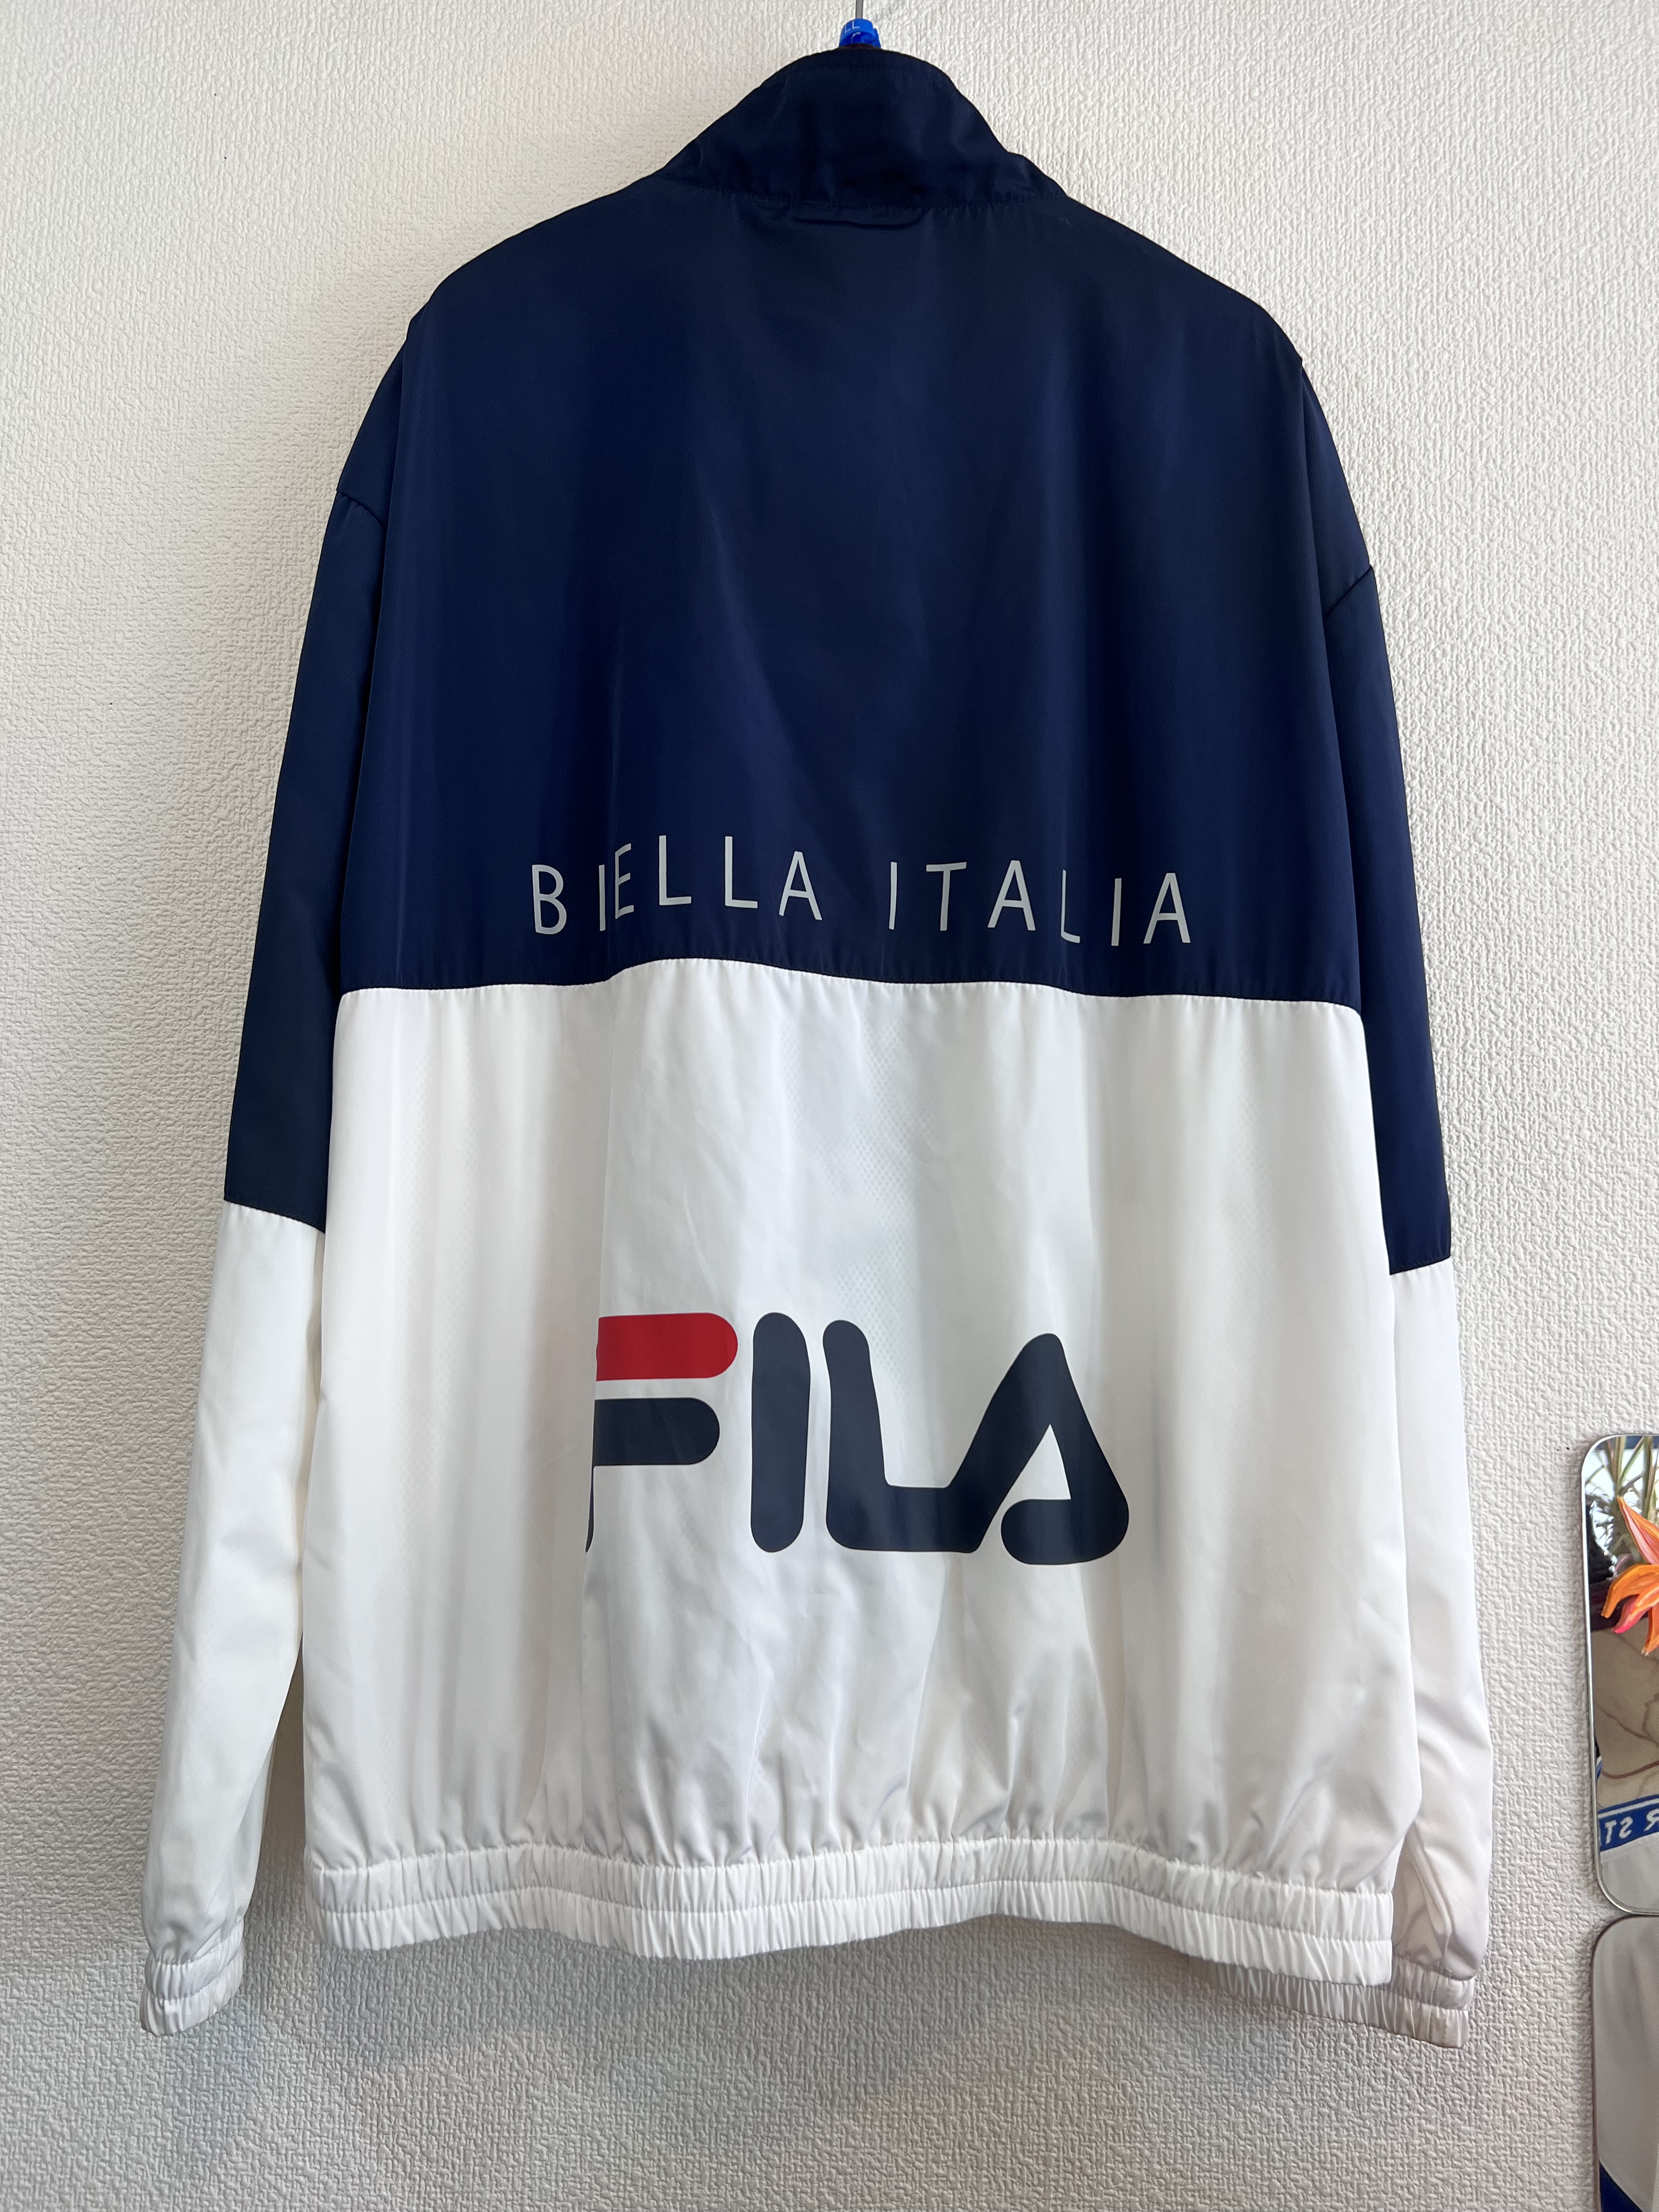 【激レア】80s FILA Biella-Italia フルジップ ジャケット